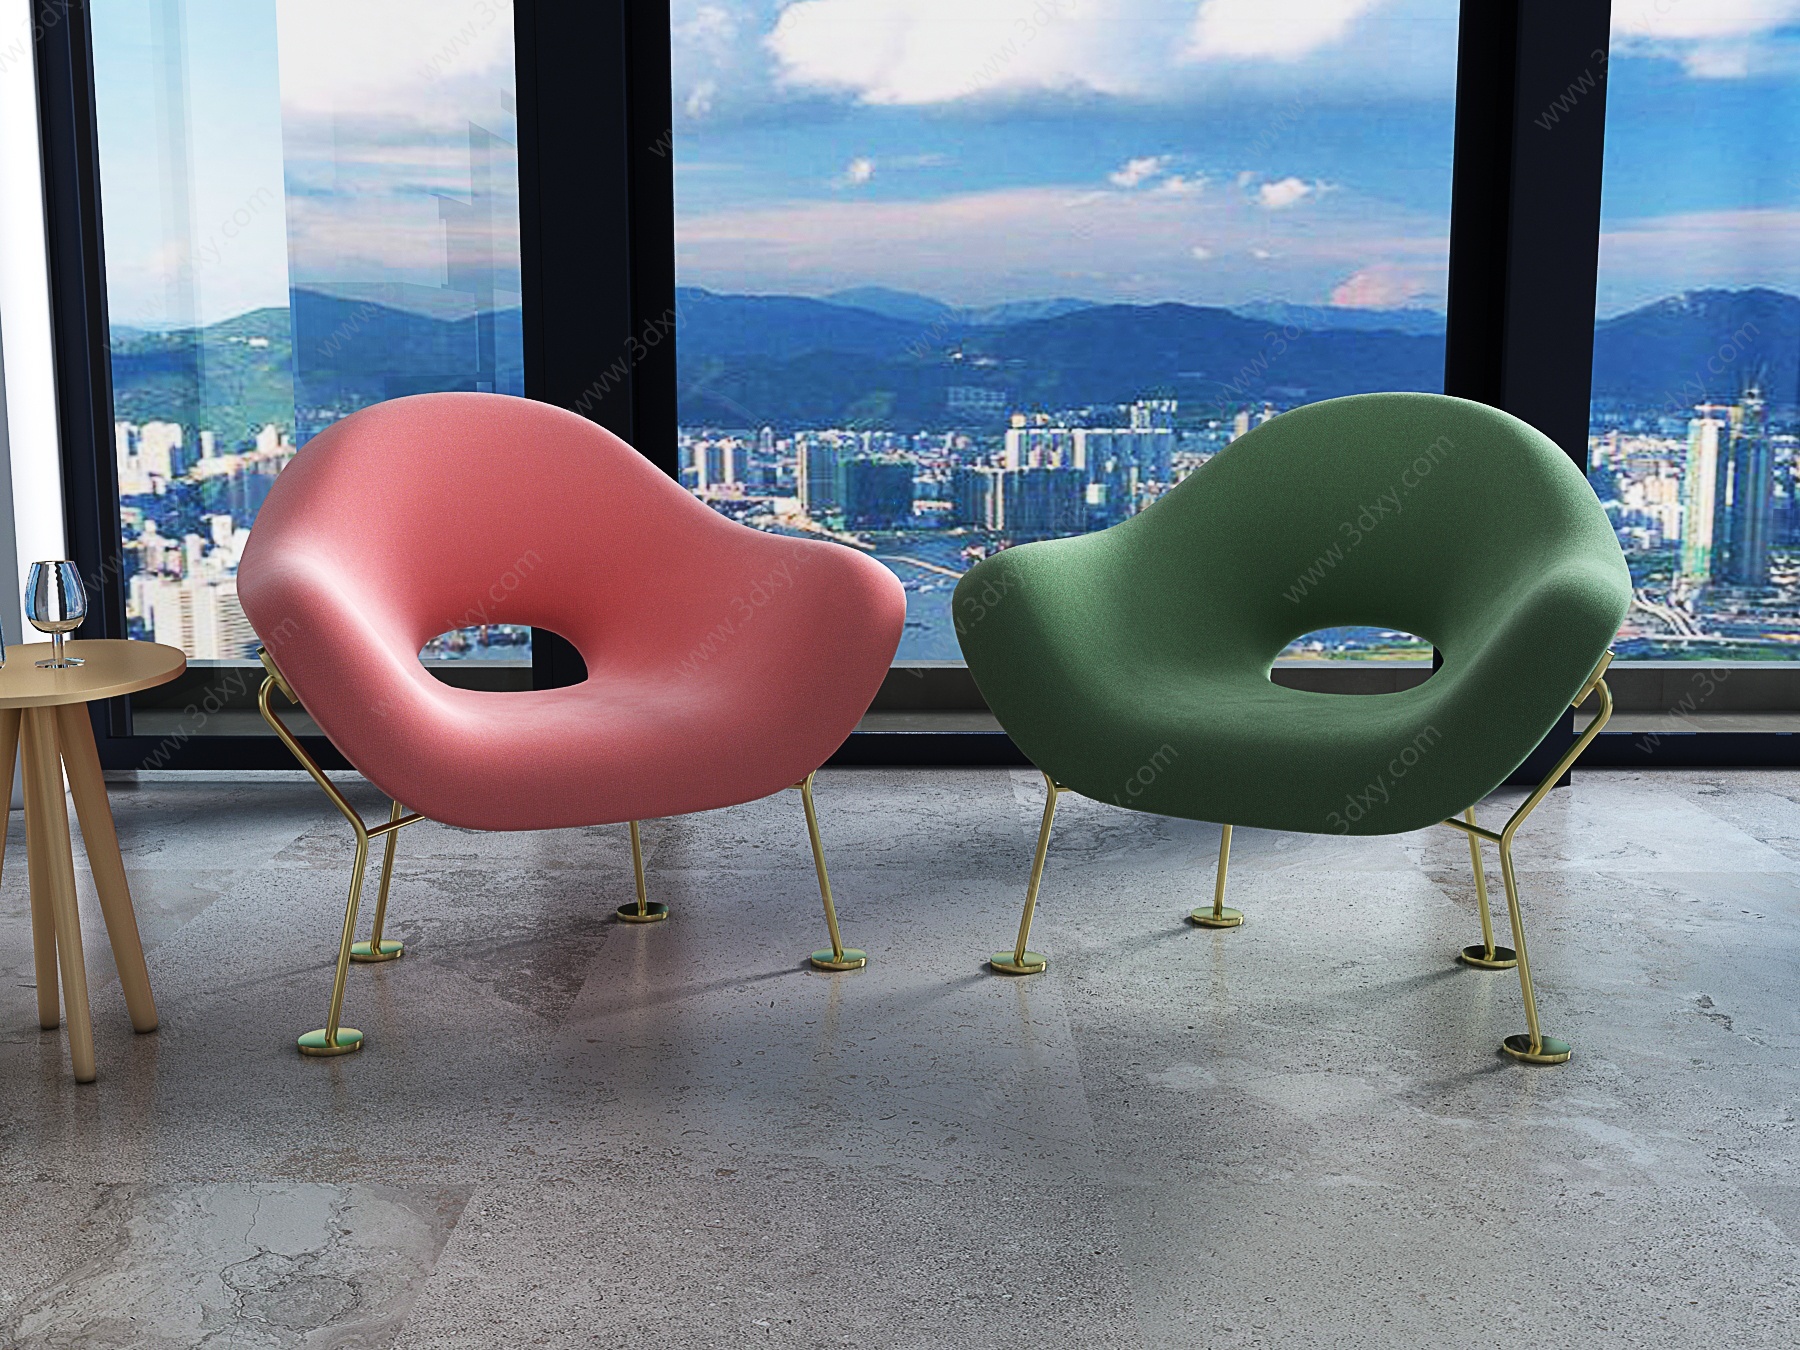 现代休闲单人沙发3D模型